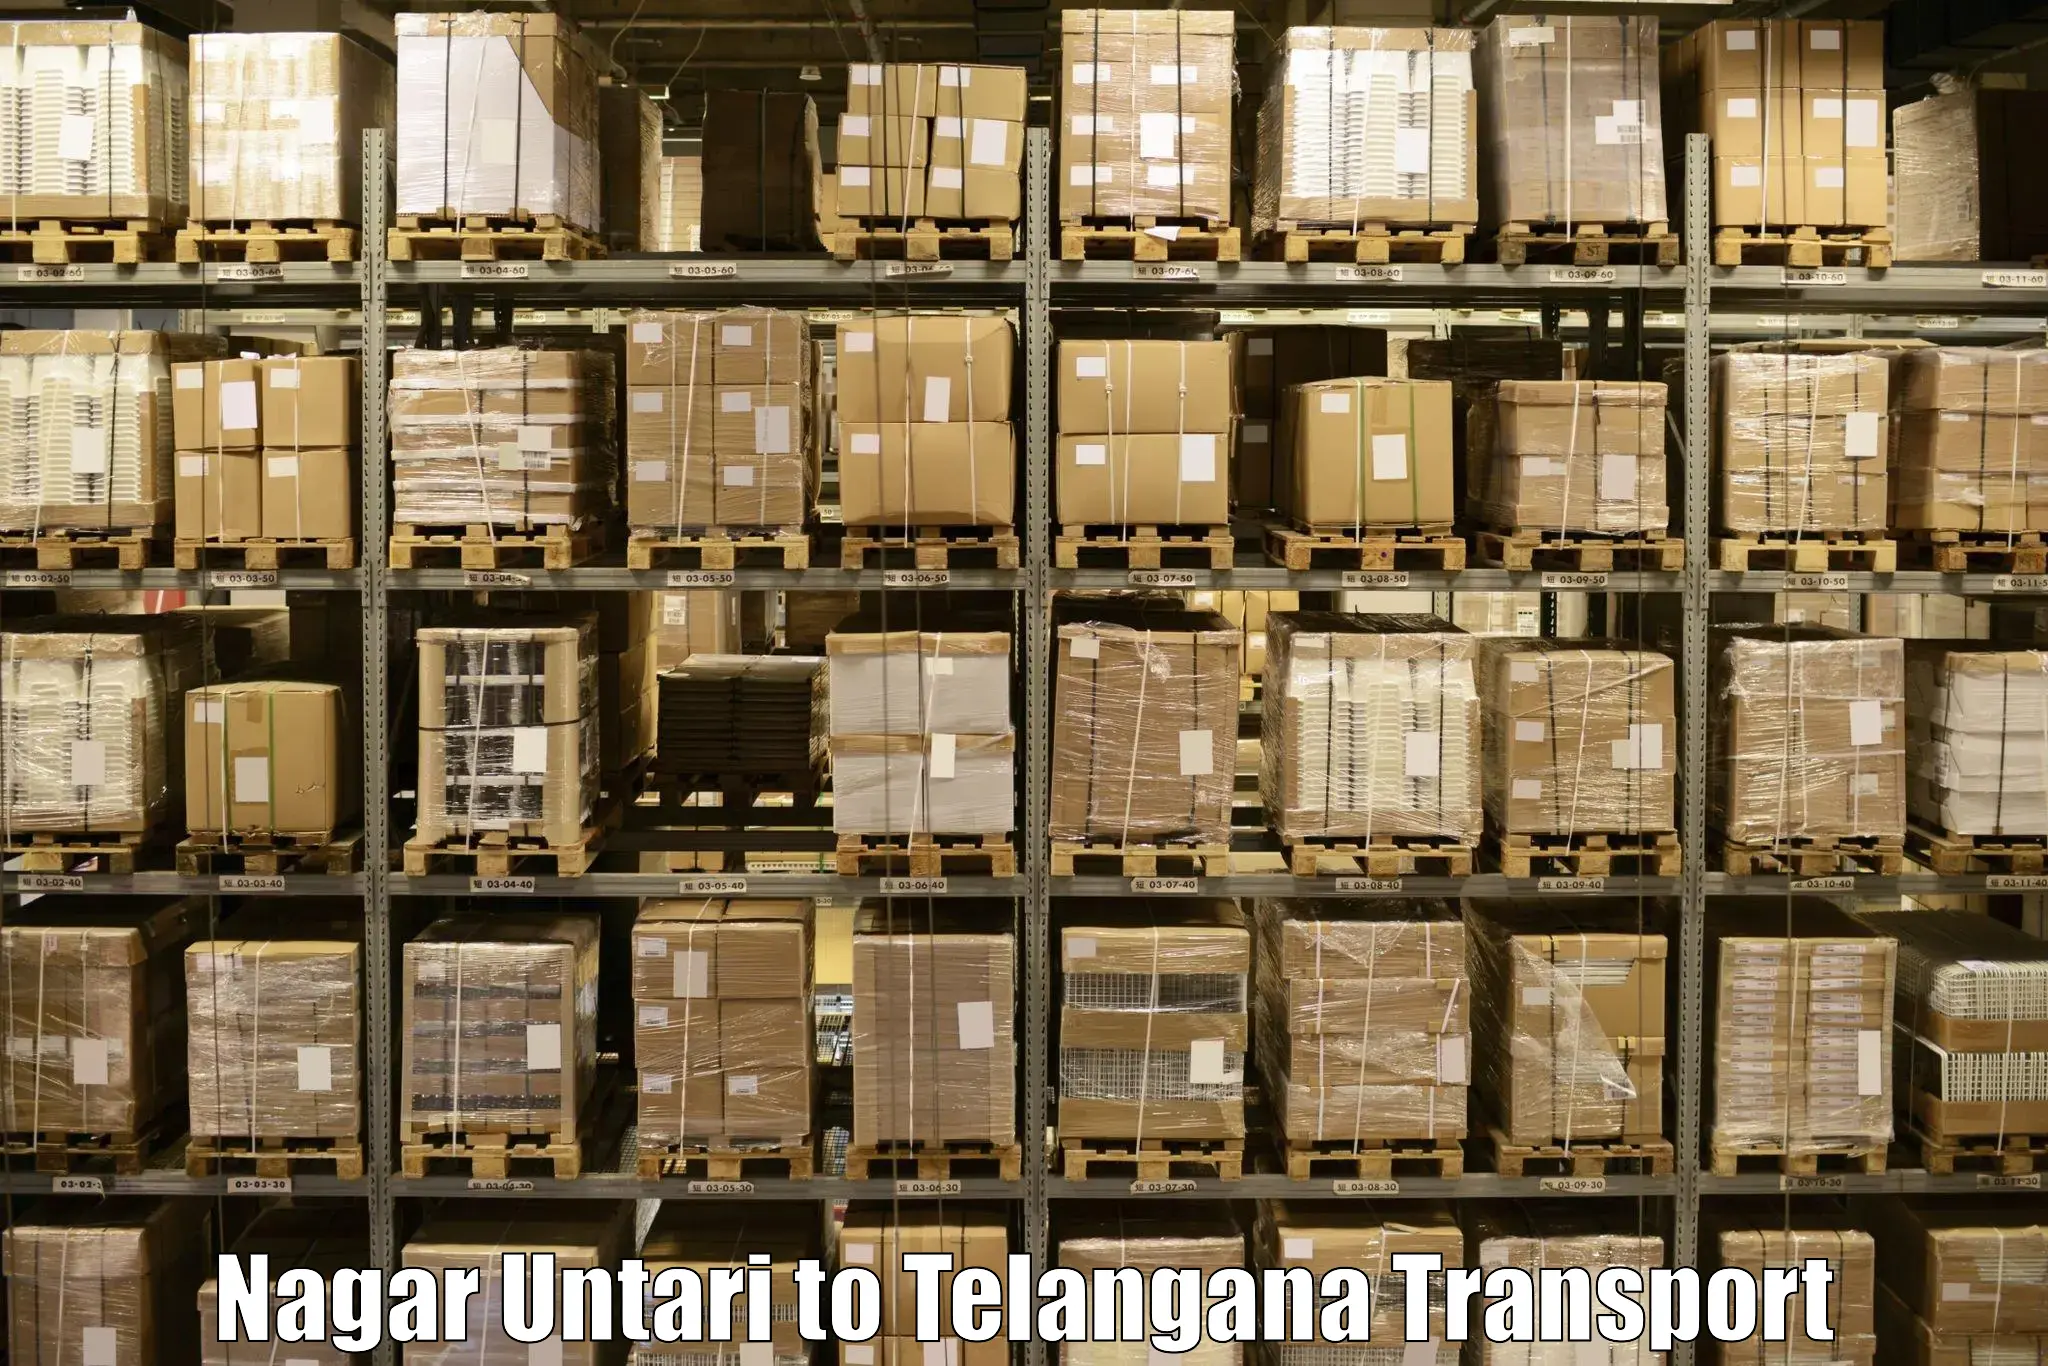 Transportation solution services Nagar Untari to Rangareddy